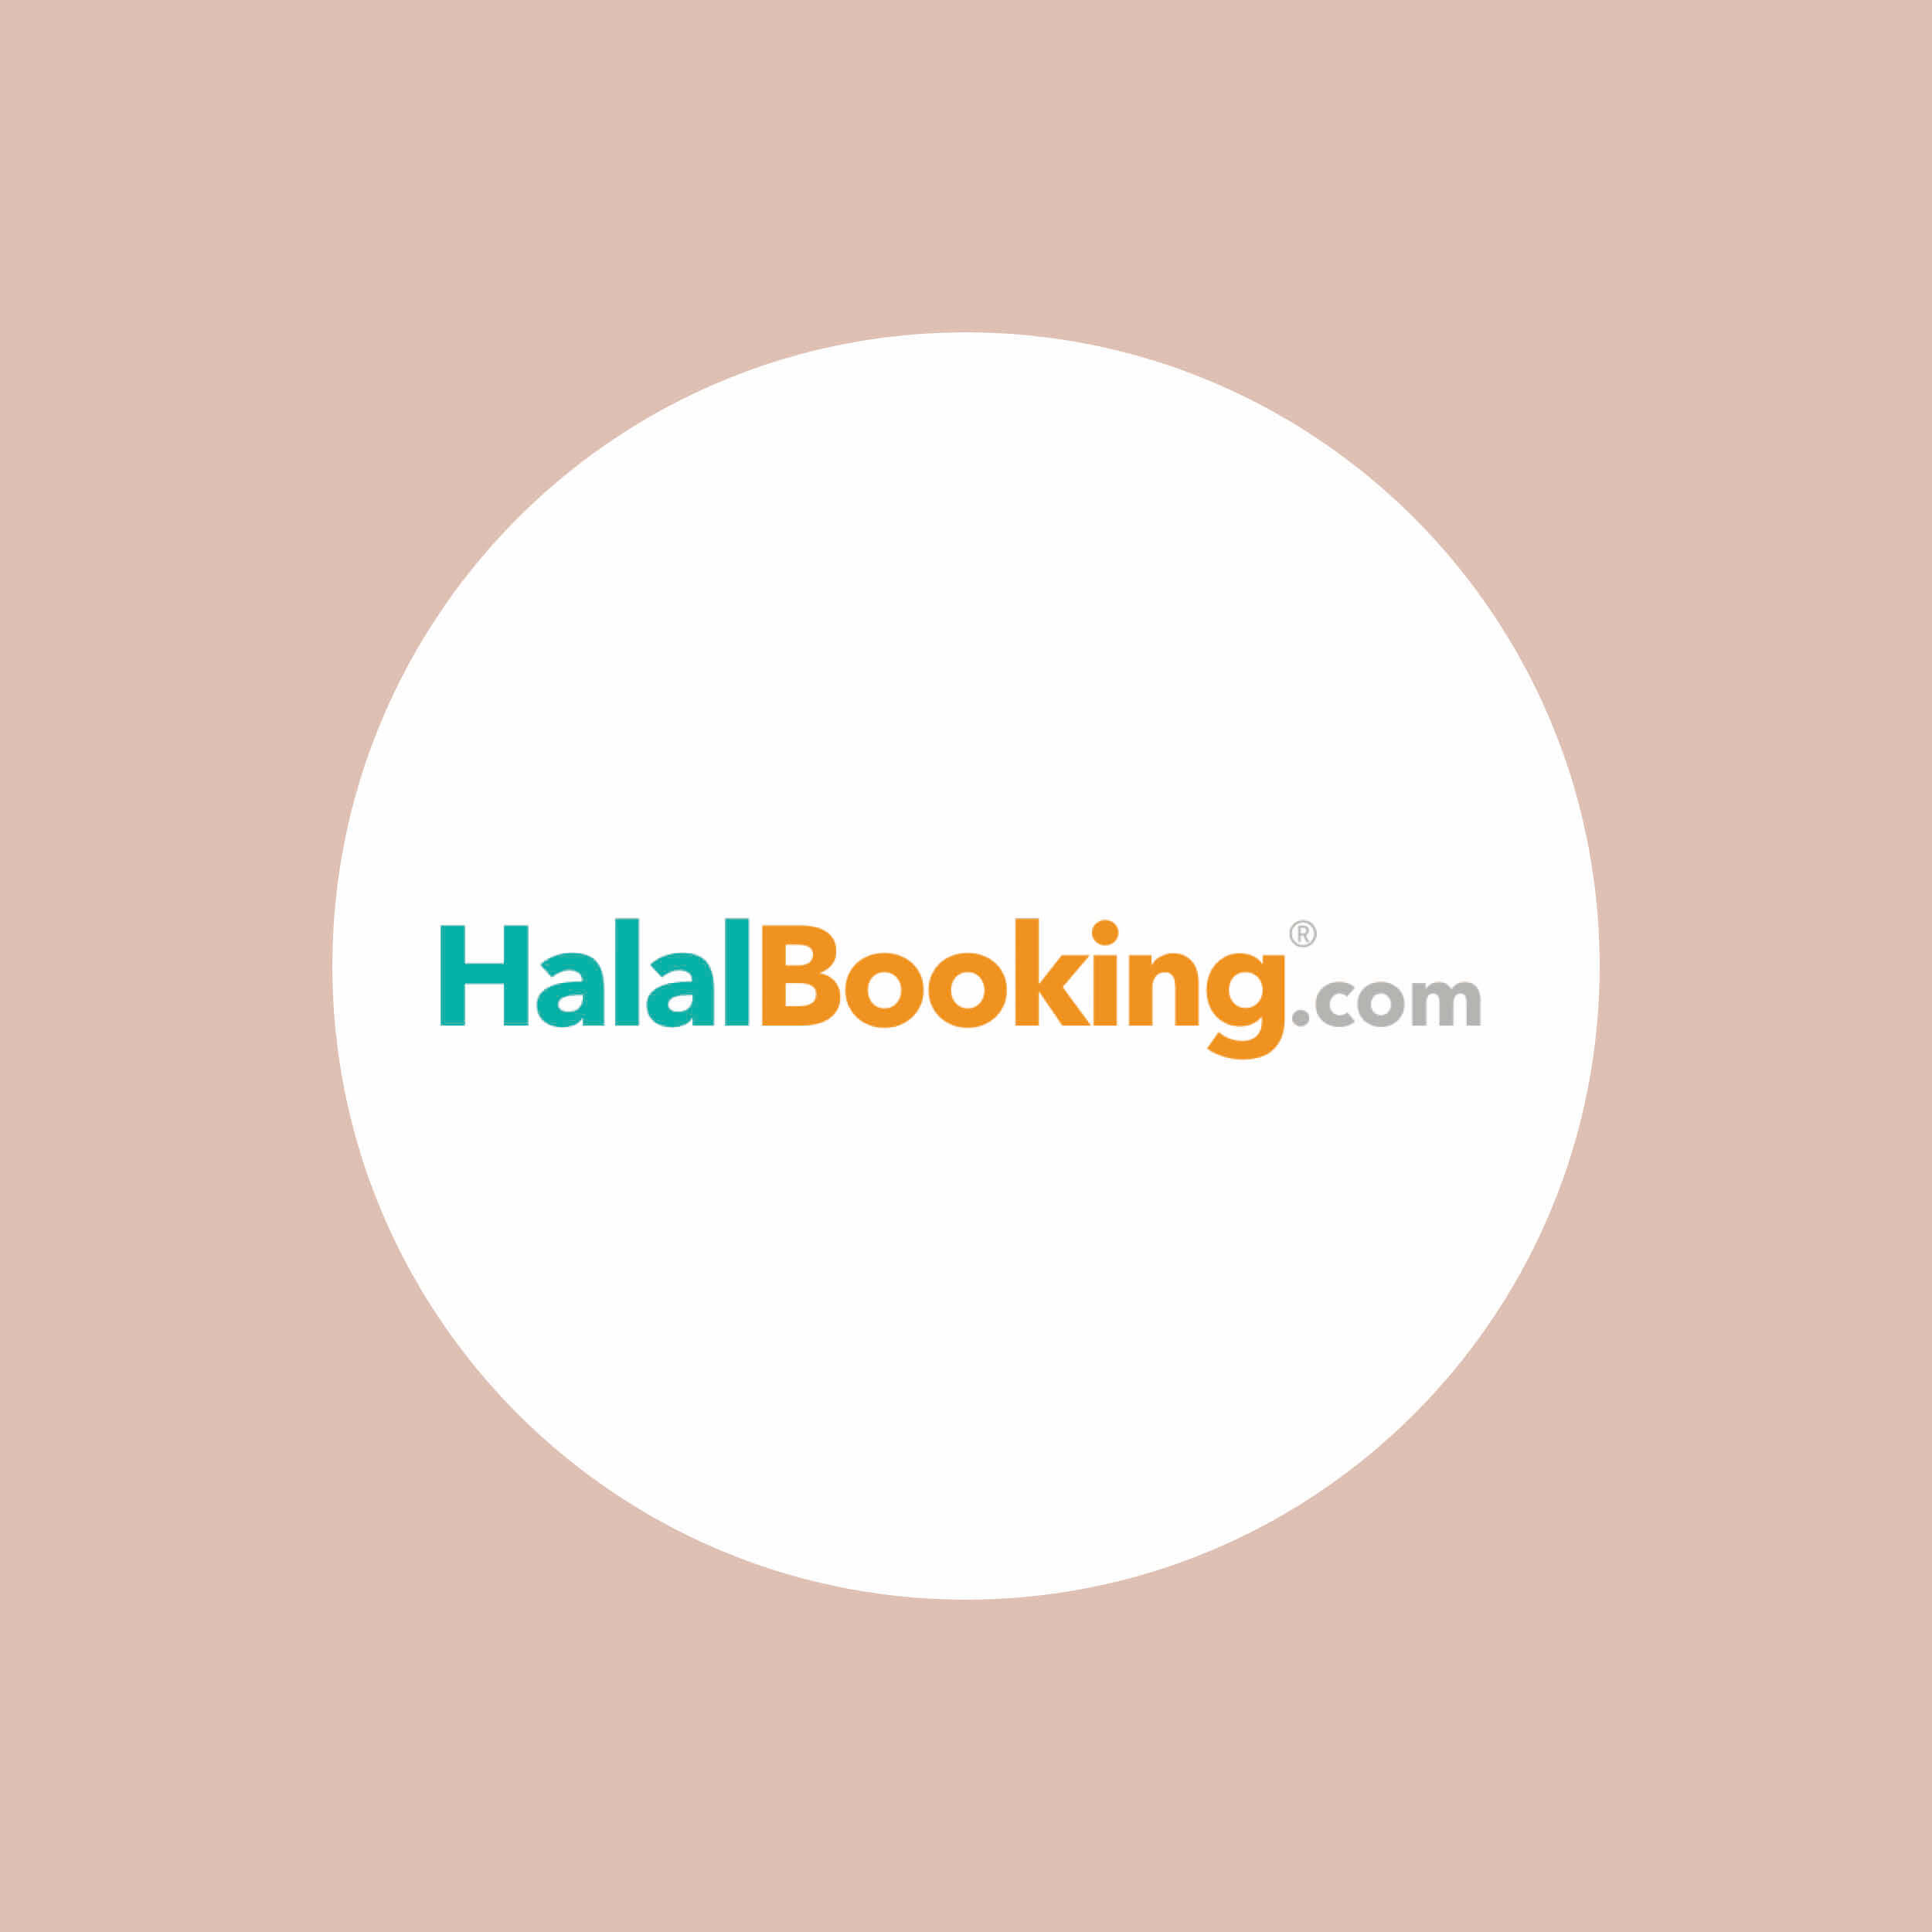 HalalBooking – Eine gezielte Kollaboration